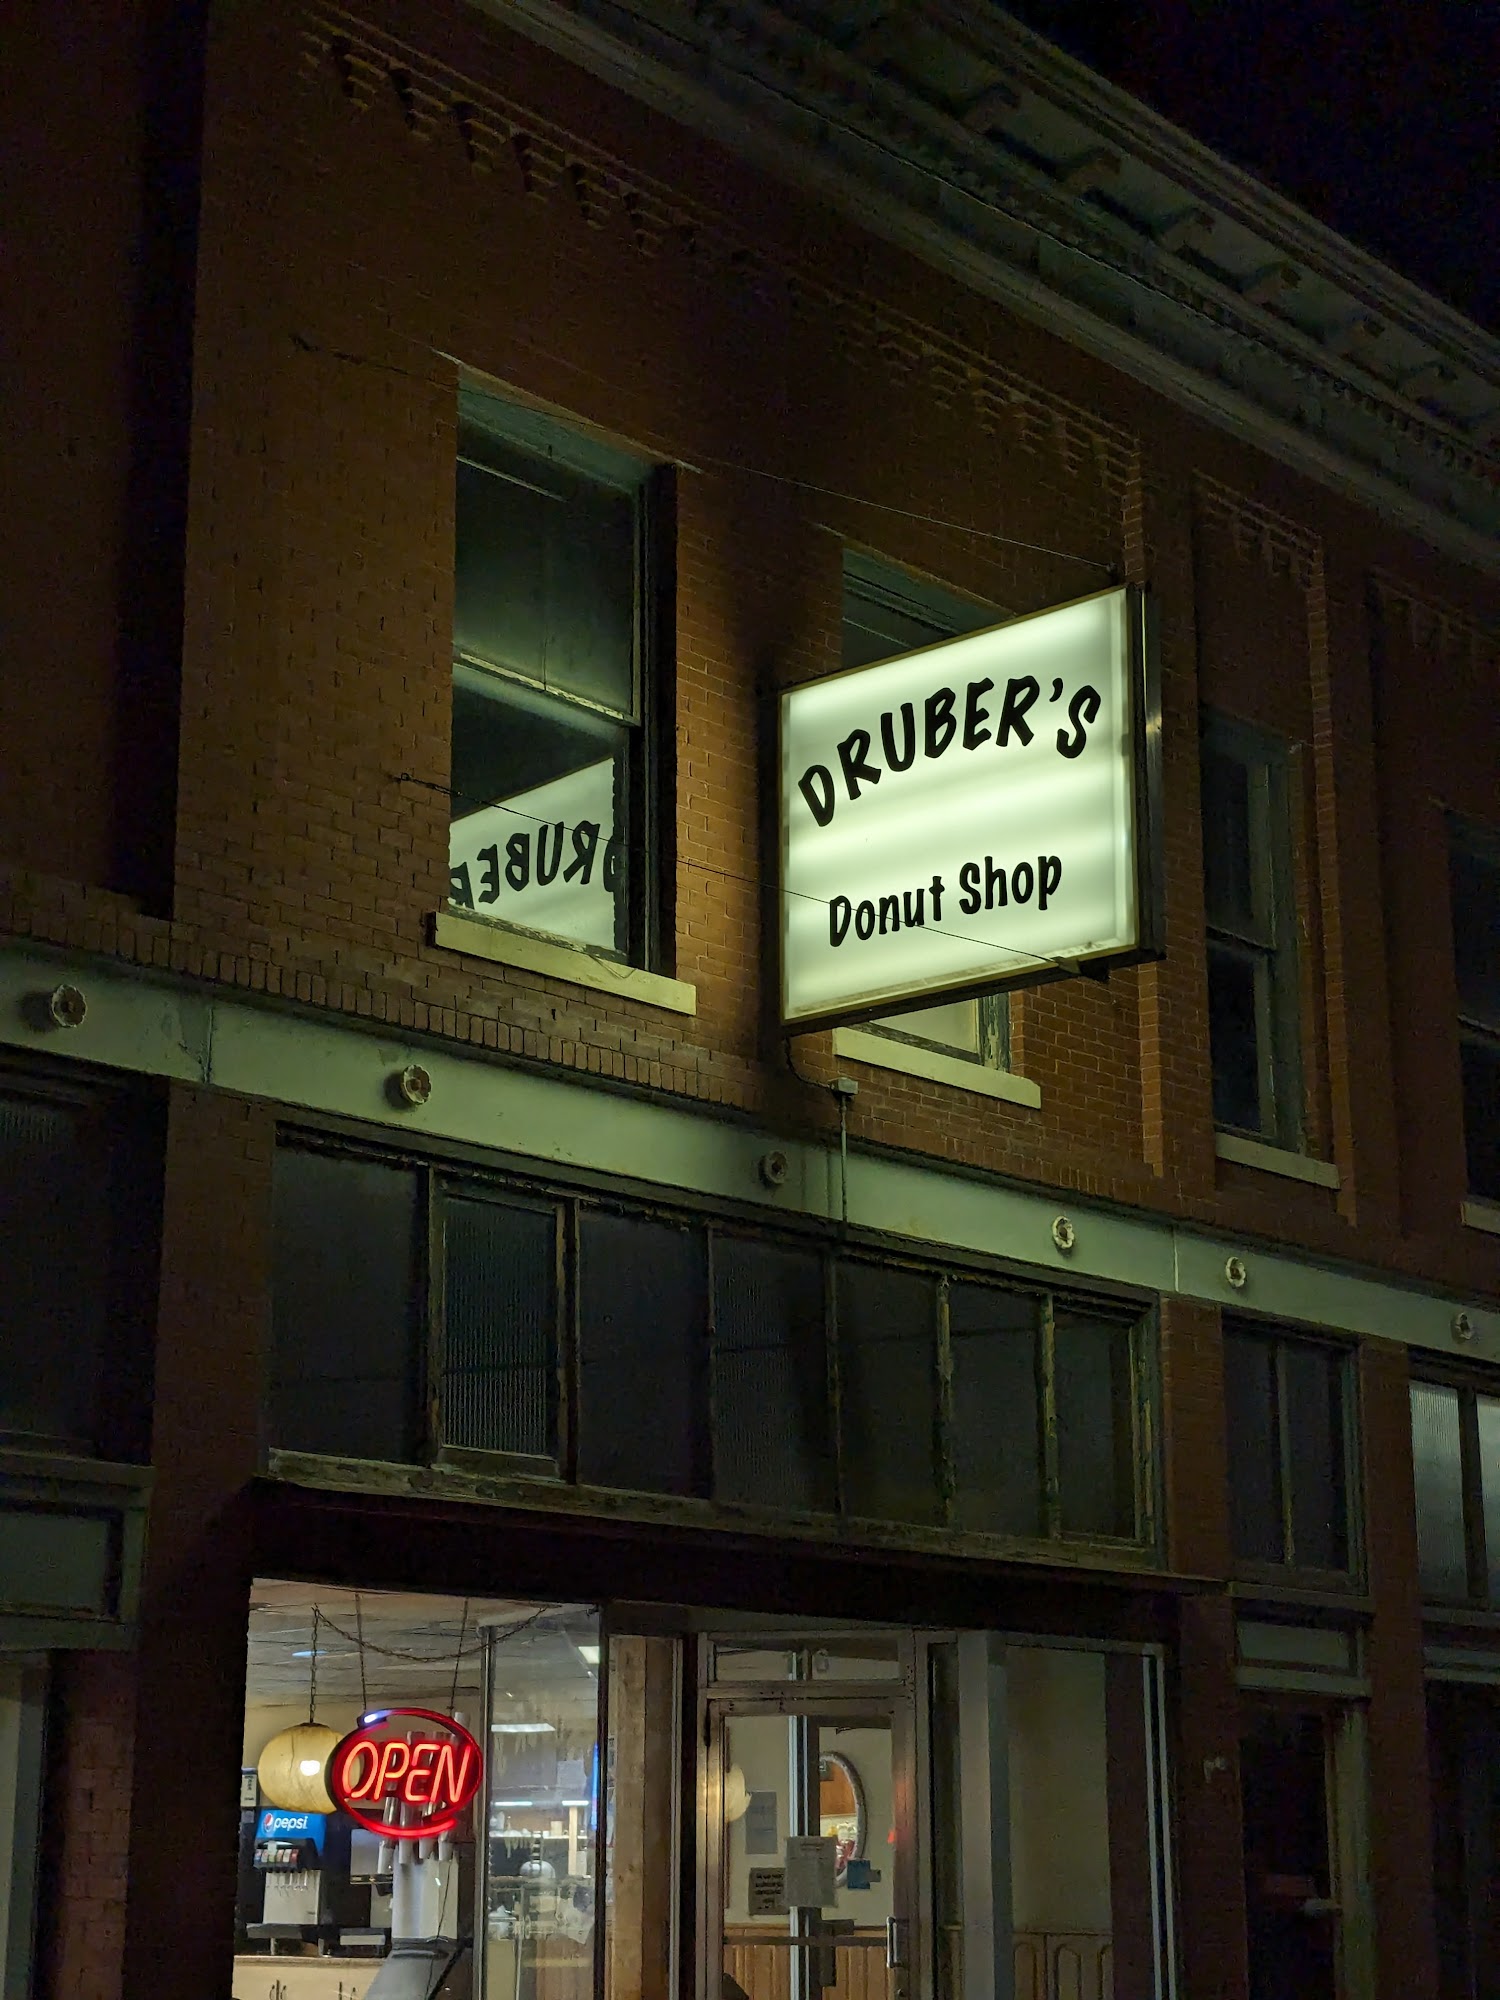 Druber's Donut Shop